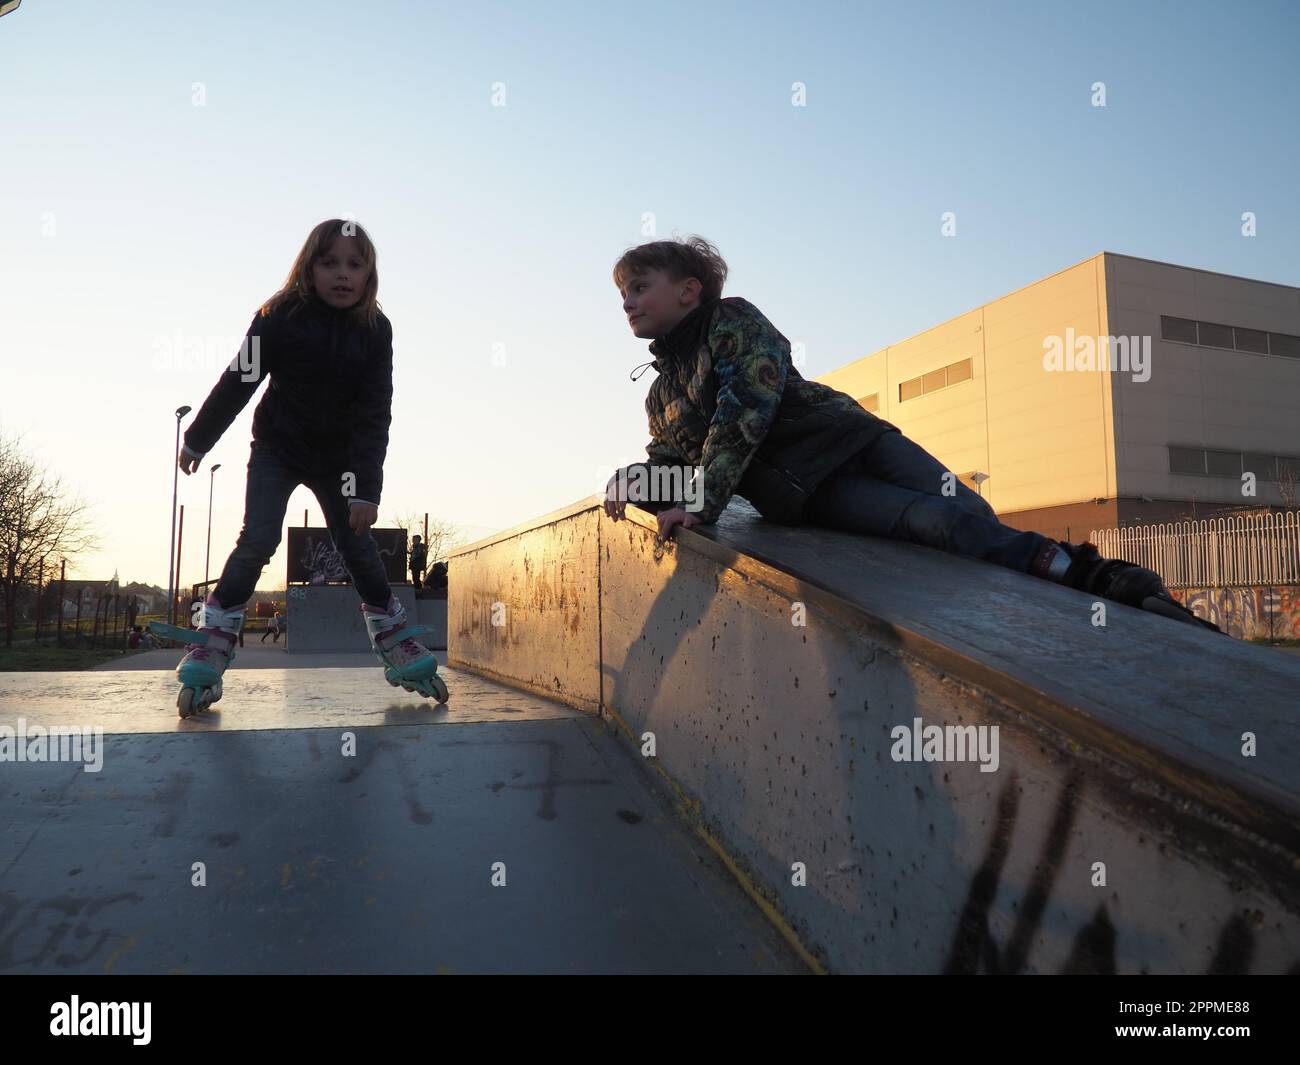 Sremska Mitrovica, Serbie, 7 mars 2021. Garçon et fille sur des patins à roulettes sur le terrain de sport. Le garçon regarde la fille. La fille fait du patin à roulettes. Enfants en vêtements demi-saison. Banque D'Images